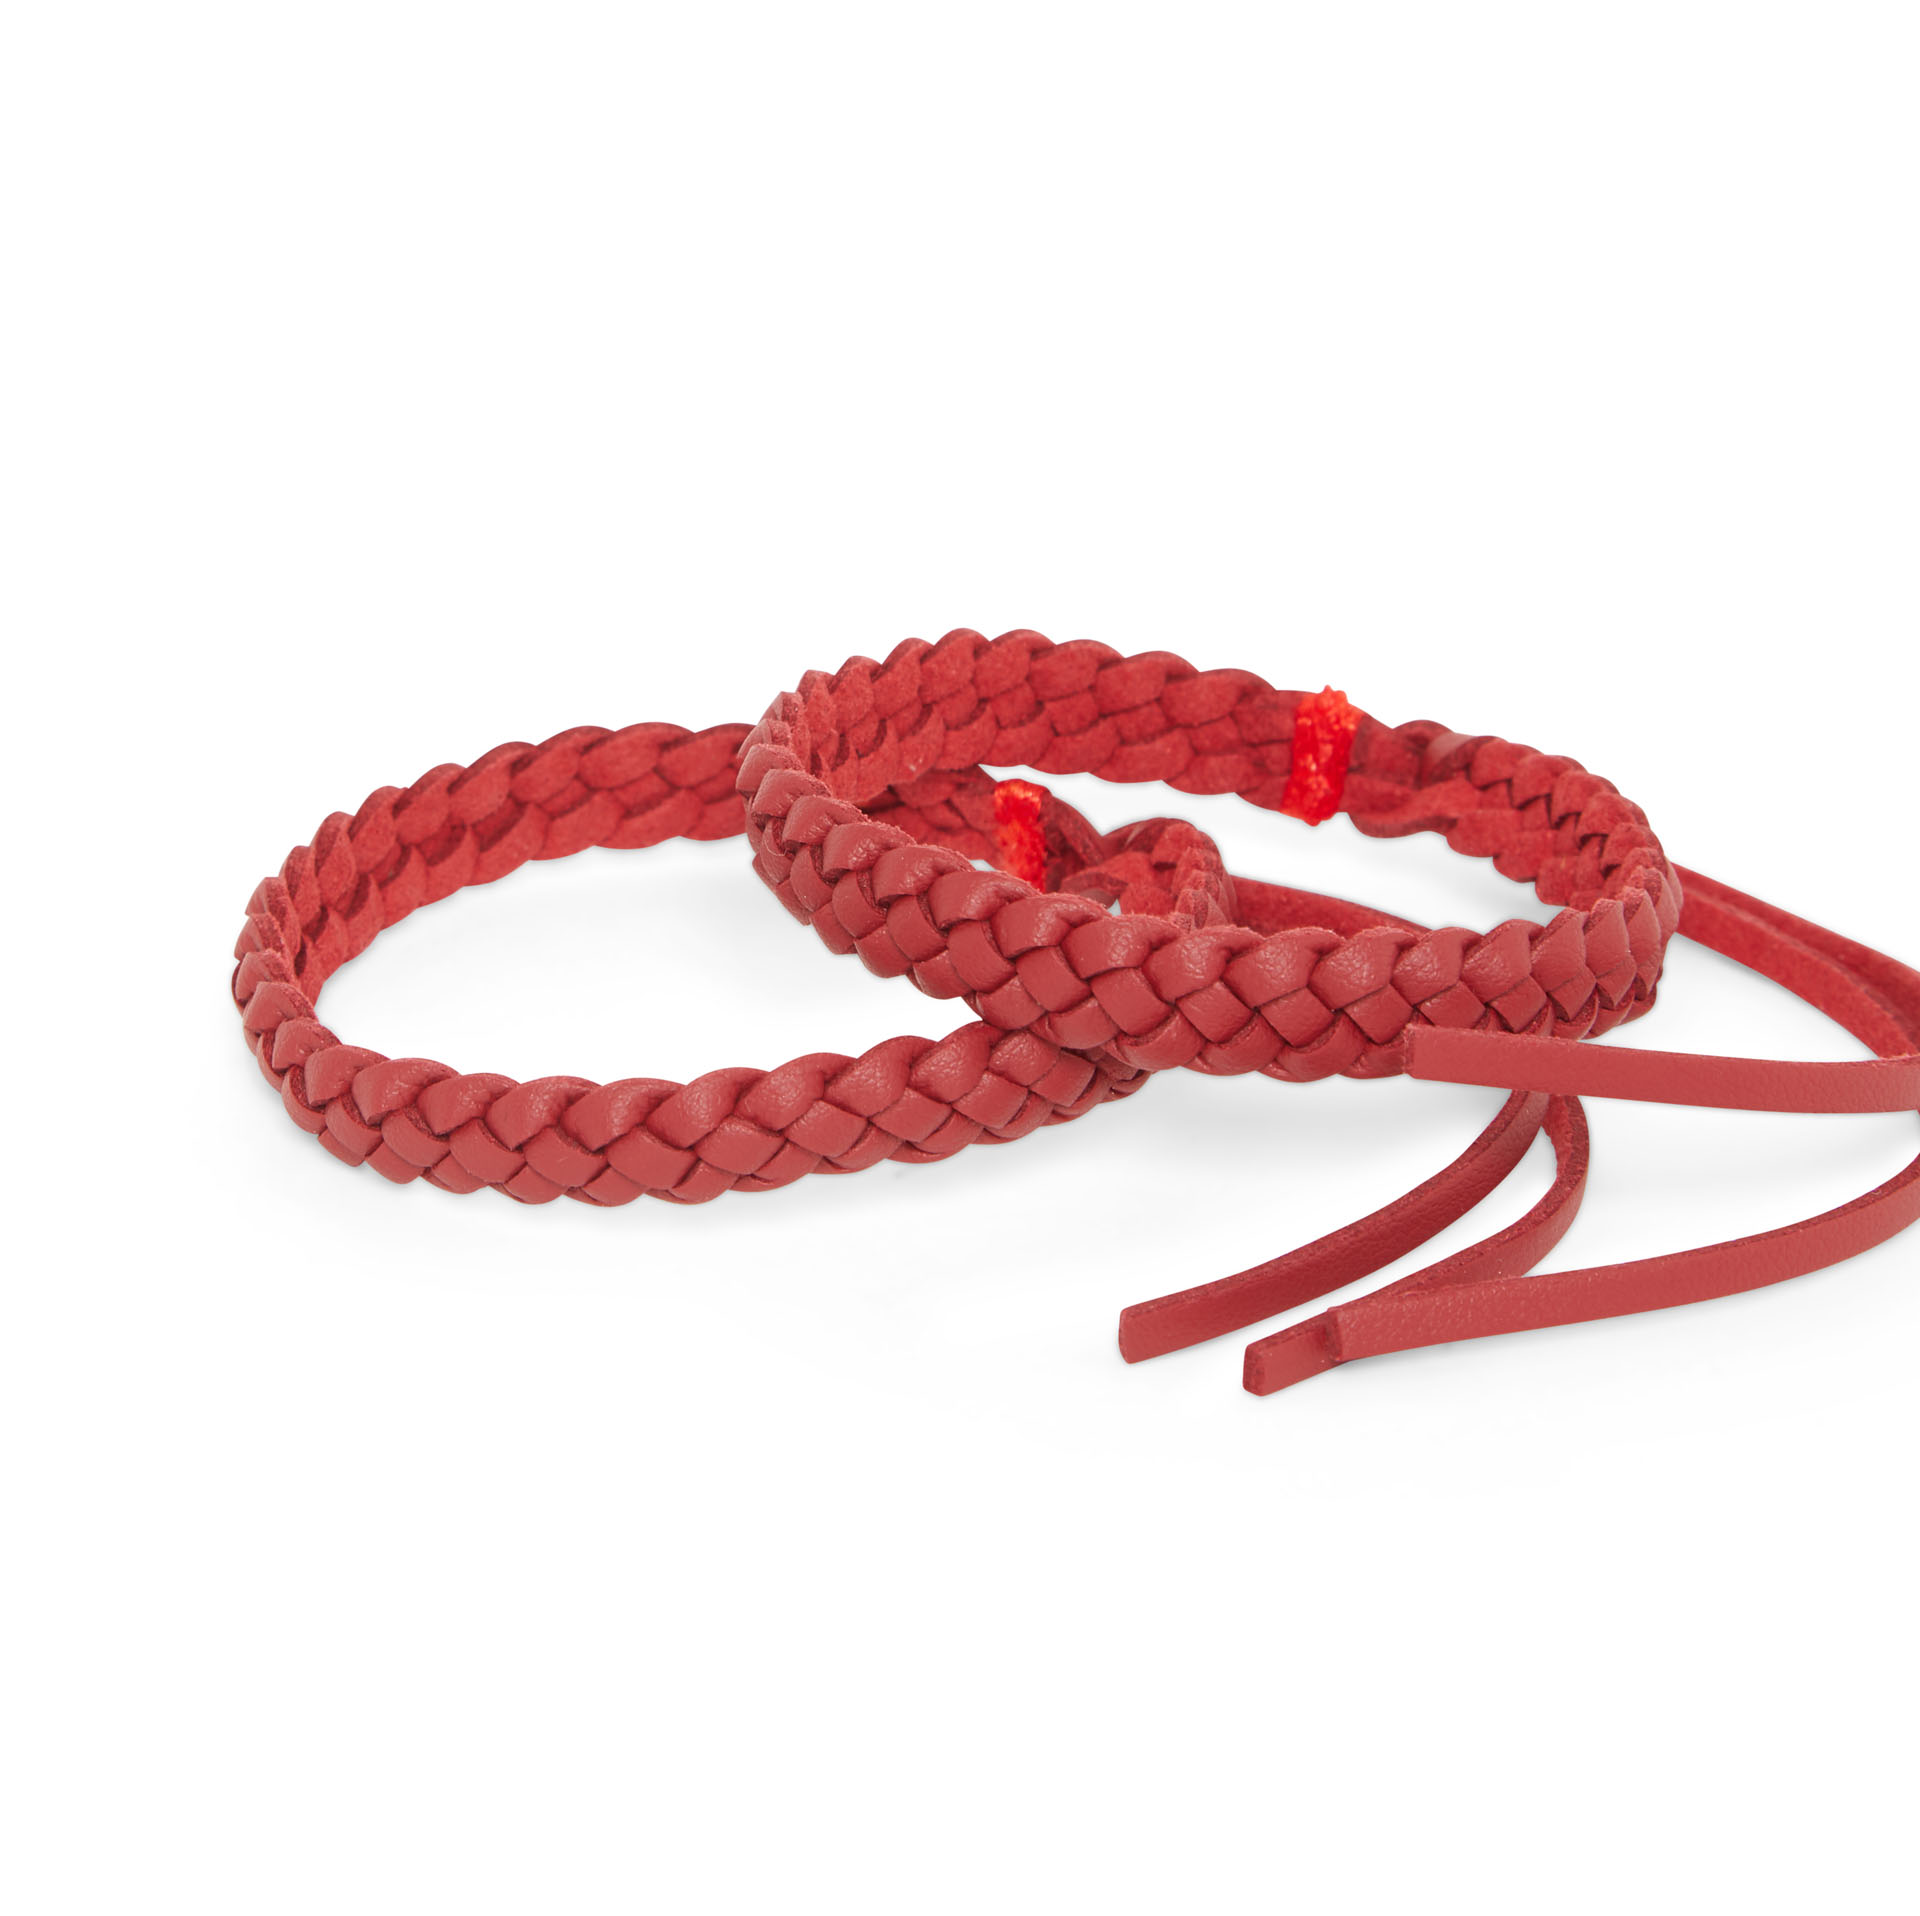 Coppia di bracciali antizanzare in similpelle - Colore rosso, rosso, large